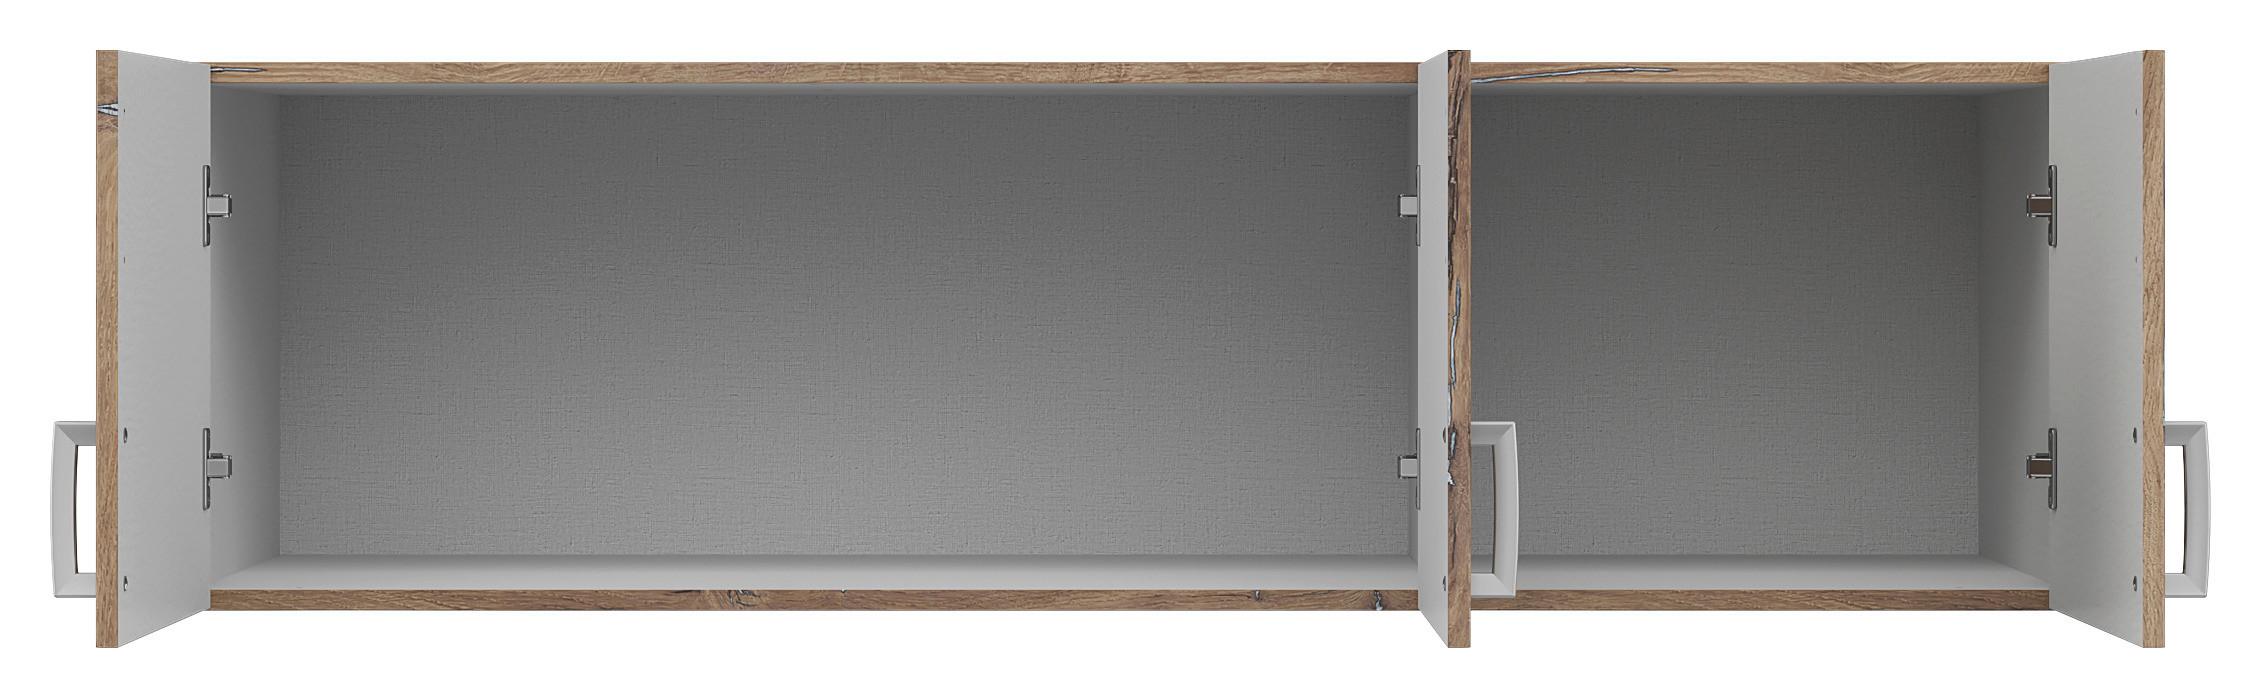 Nástavec Brando 136cm Dekor Dub Flagstaff - barvy dubu/barvy stříbra, Konvenční, kompozitní dřevo/plast (136/39/54cm)